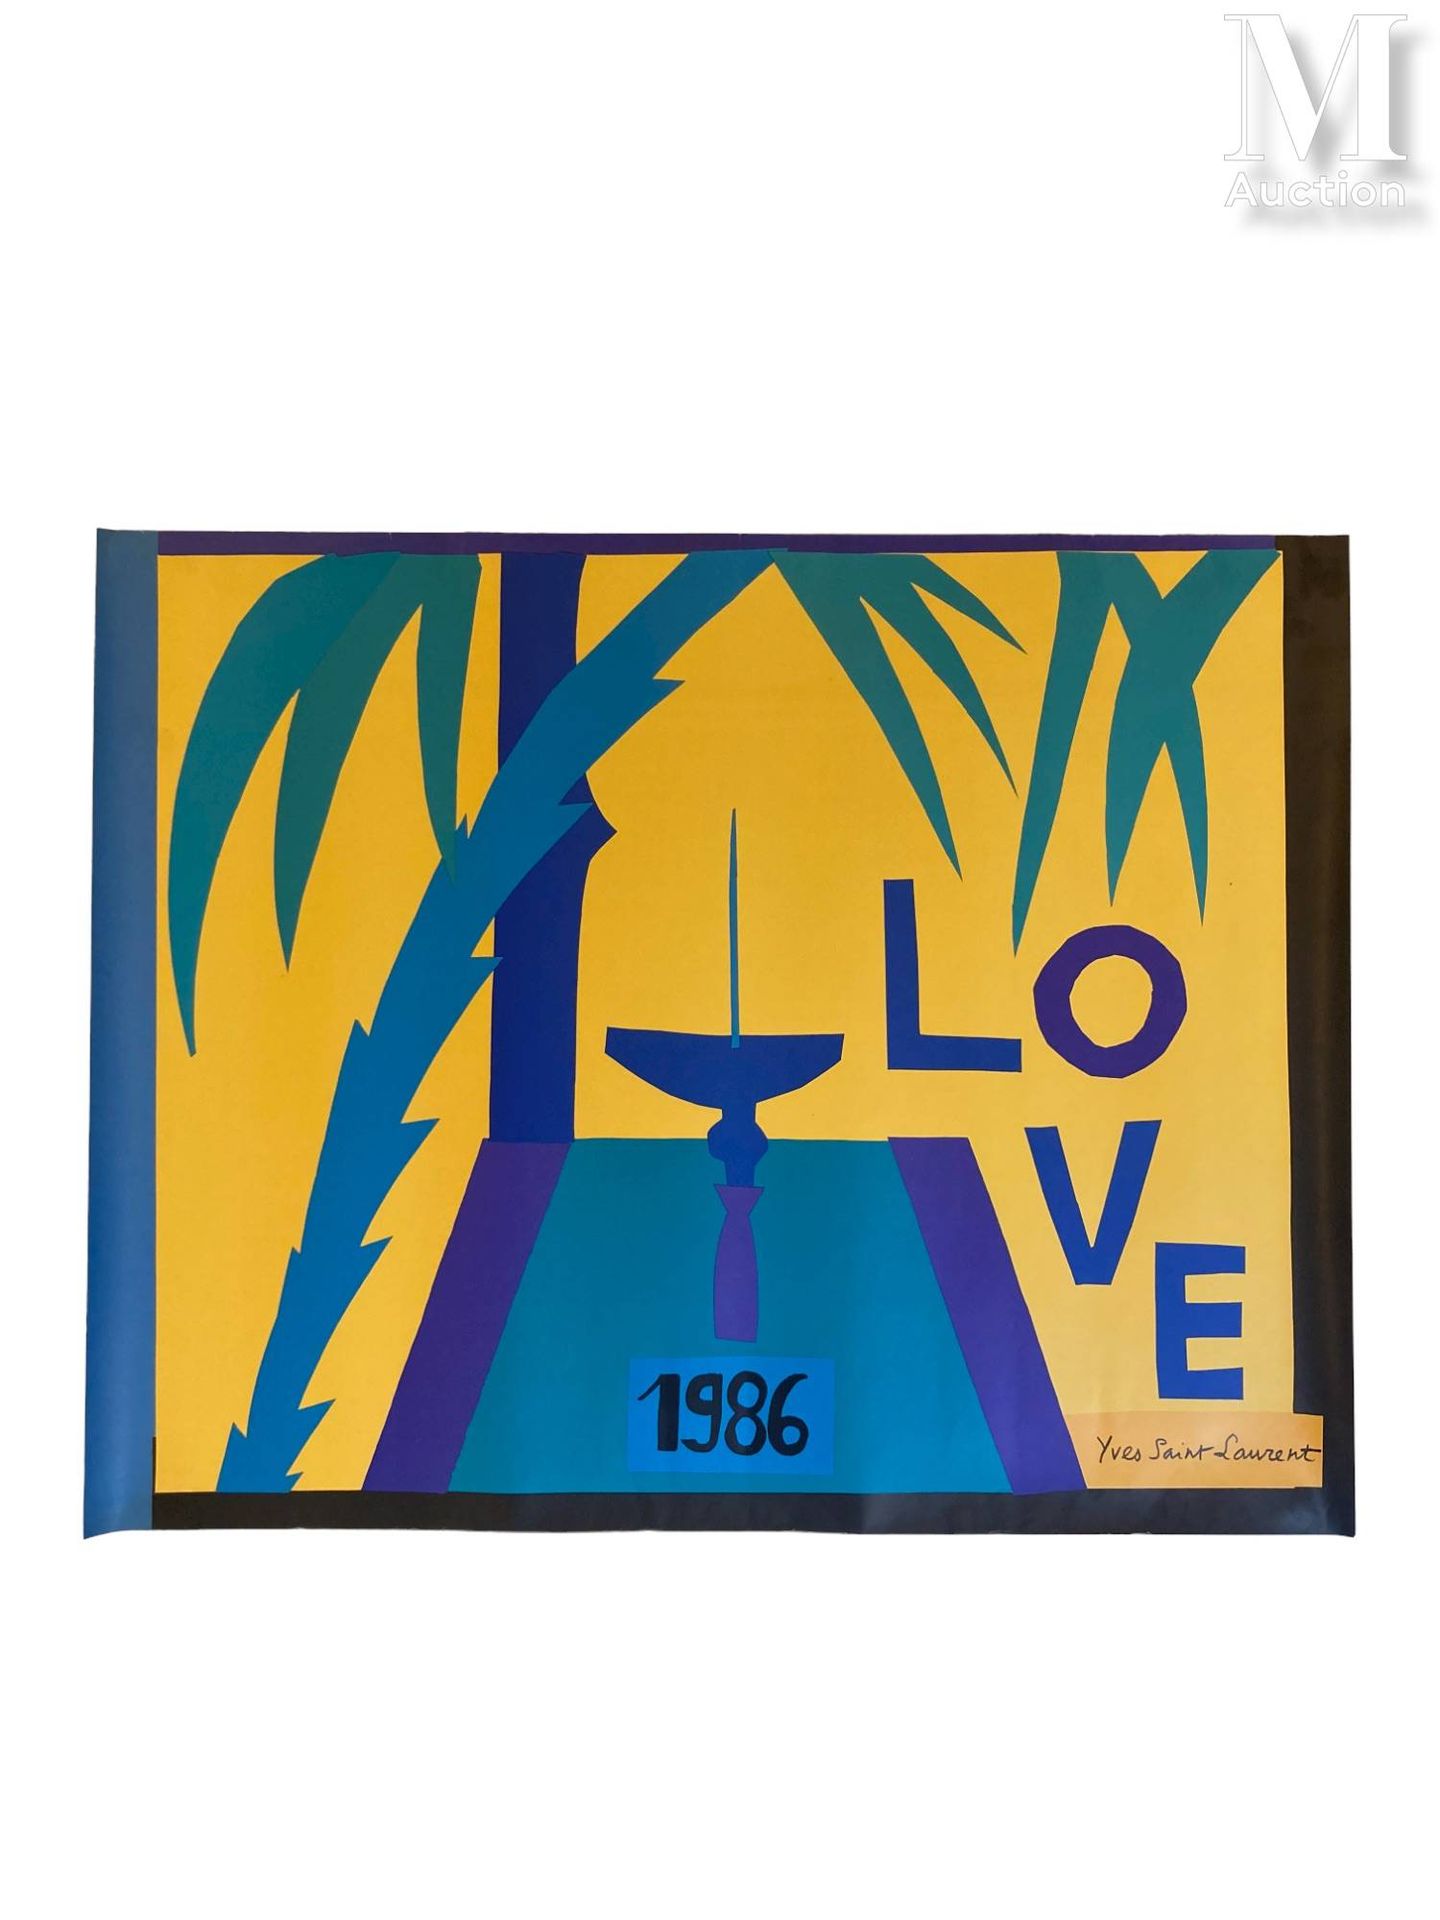 YVES SAINT LAURENT - 1986 Love" poster



print on paper 

68 x 54 cm